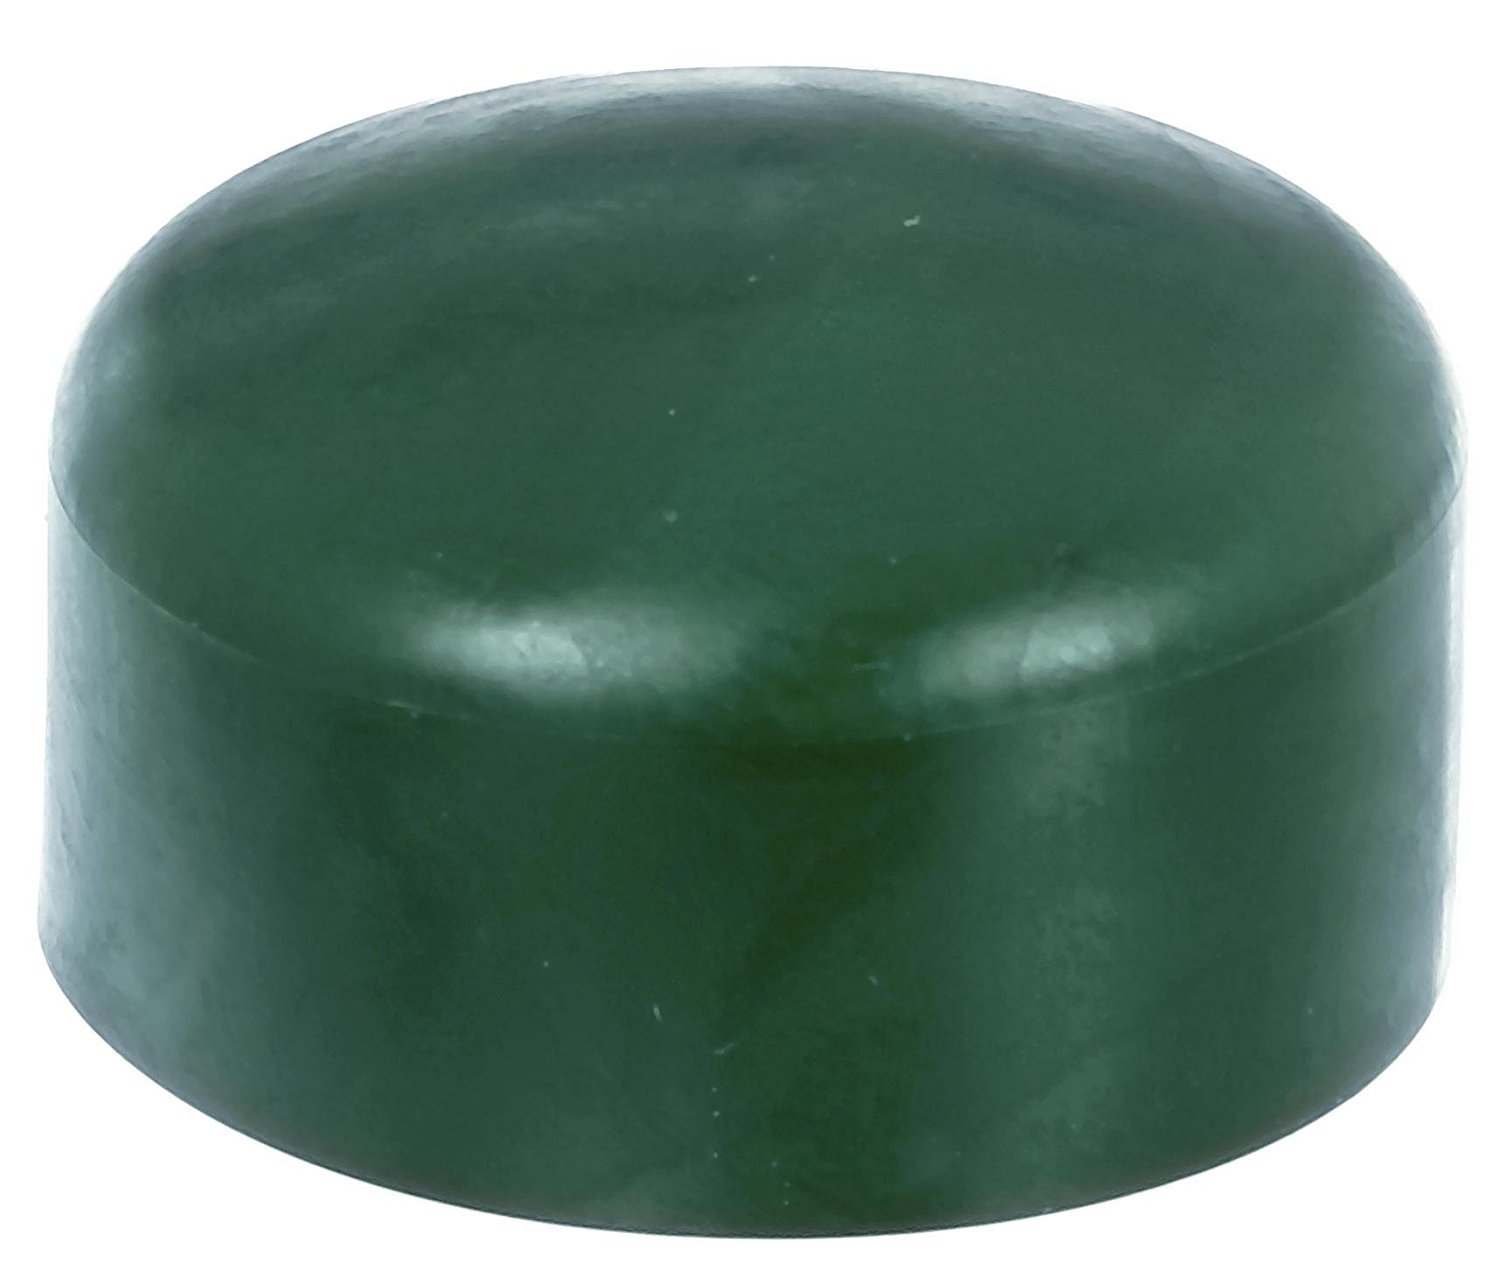 4 x Zaunkappe grün 59-60 mm, Pfostenkappe für runde Metallpfosten, grün, Rohrkappen, Abdeckkappe für